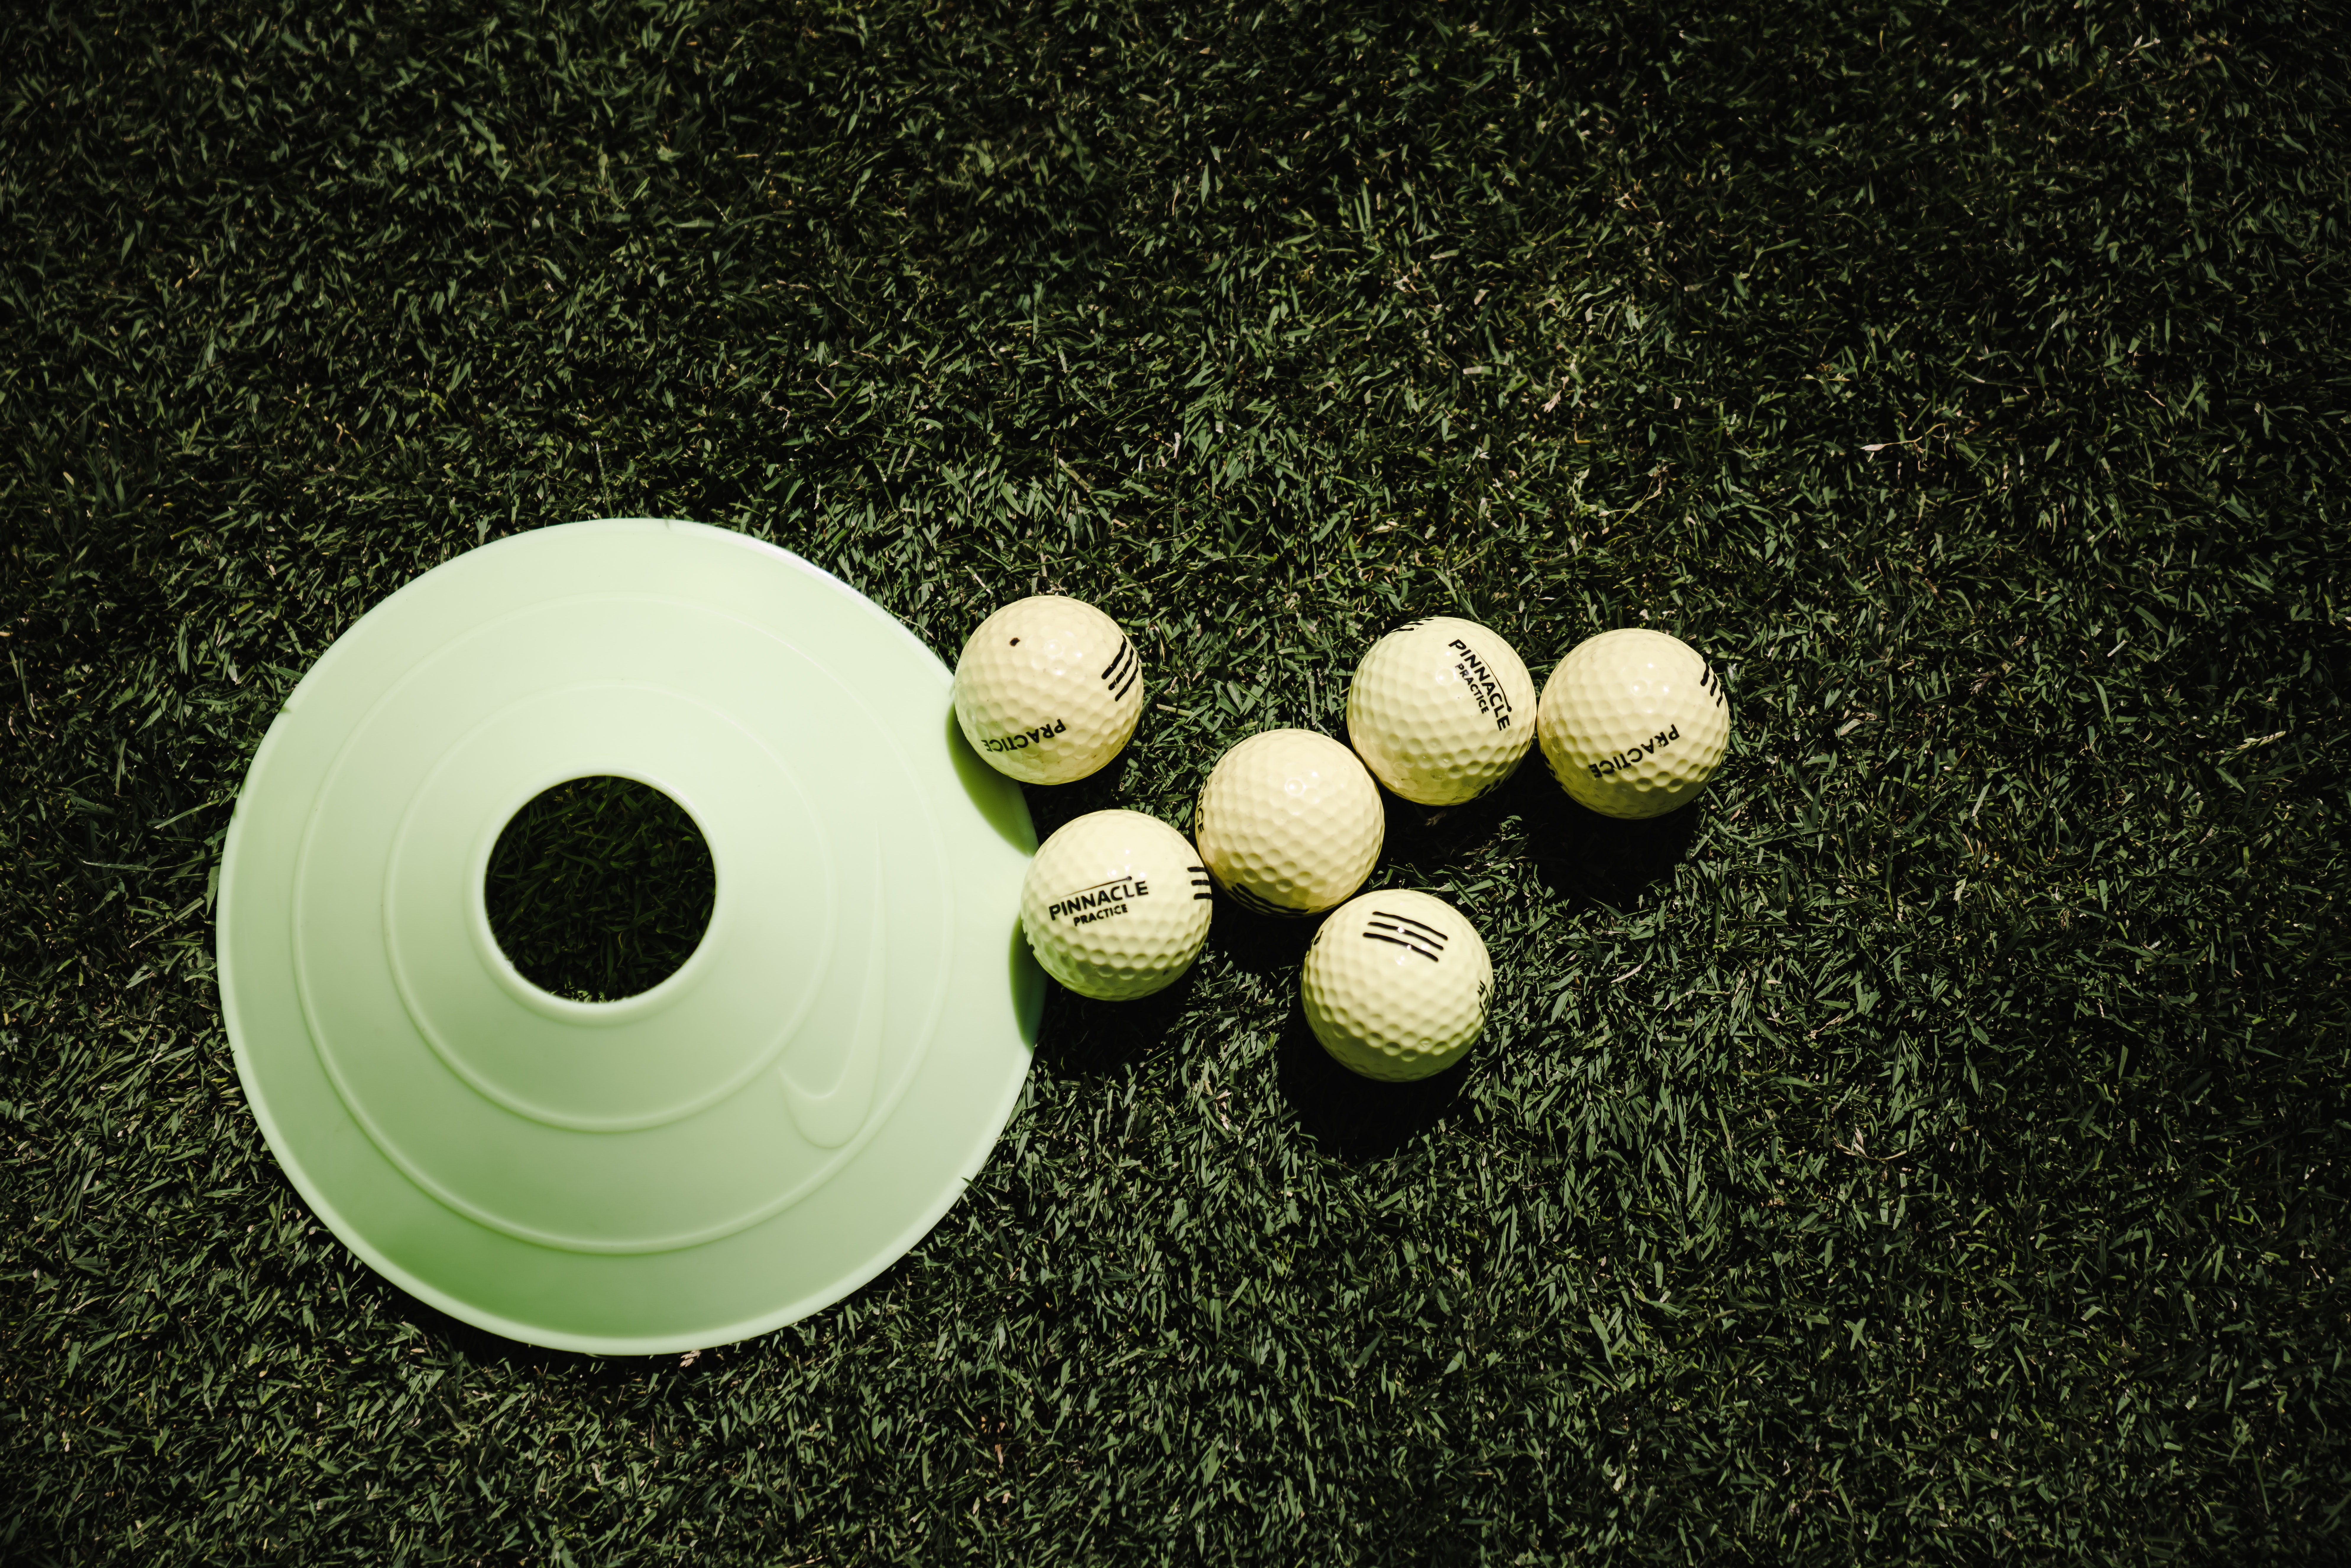 Six golf balls near a golf disc on the grass image